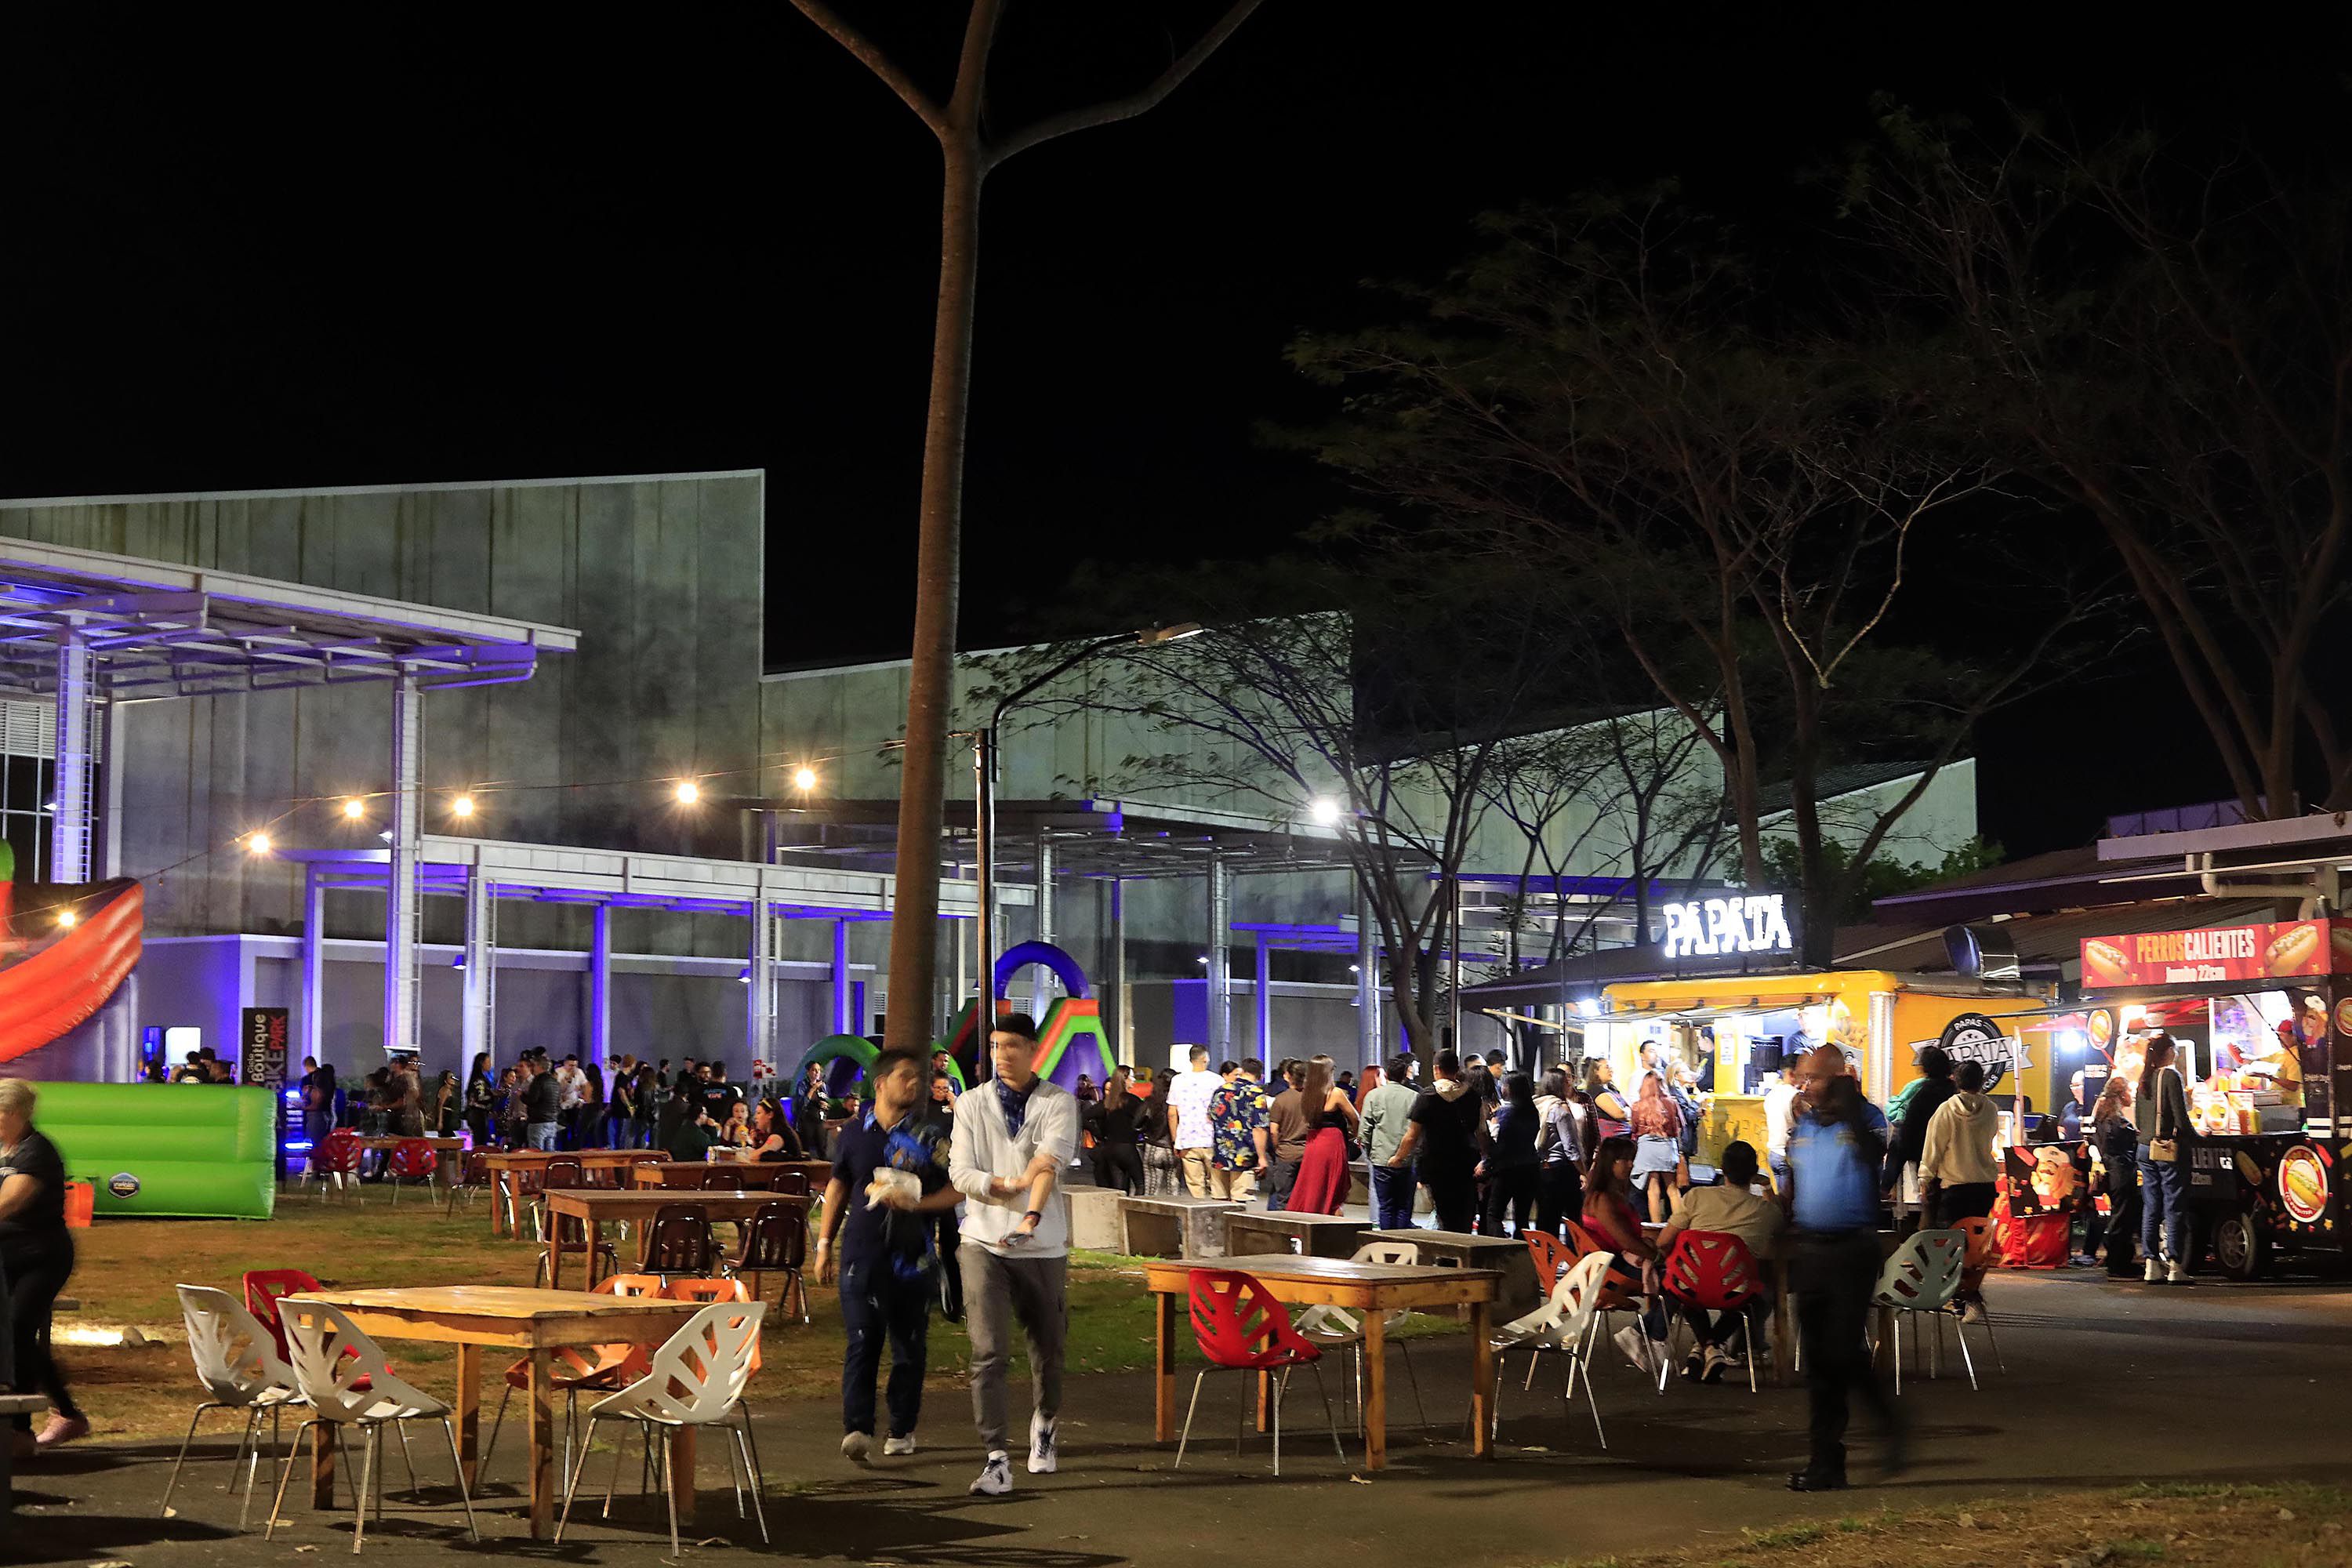 El Parque Viva recibió al público de Steve Aoki con diferentes amenidades.  Hubo música de 'DJ' desde temprano, así como venta de bebidas y comida, así como espacios de descanso y entretenimiento.